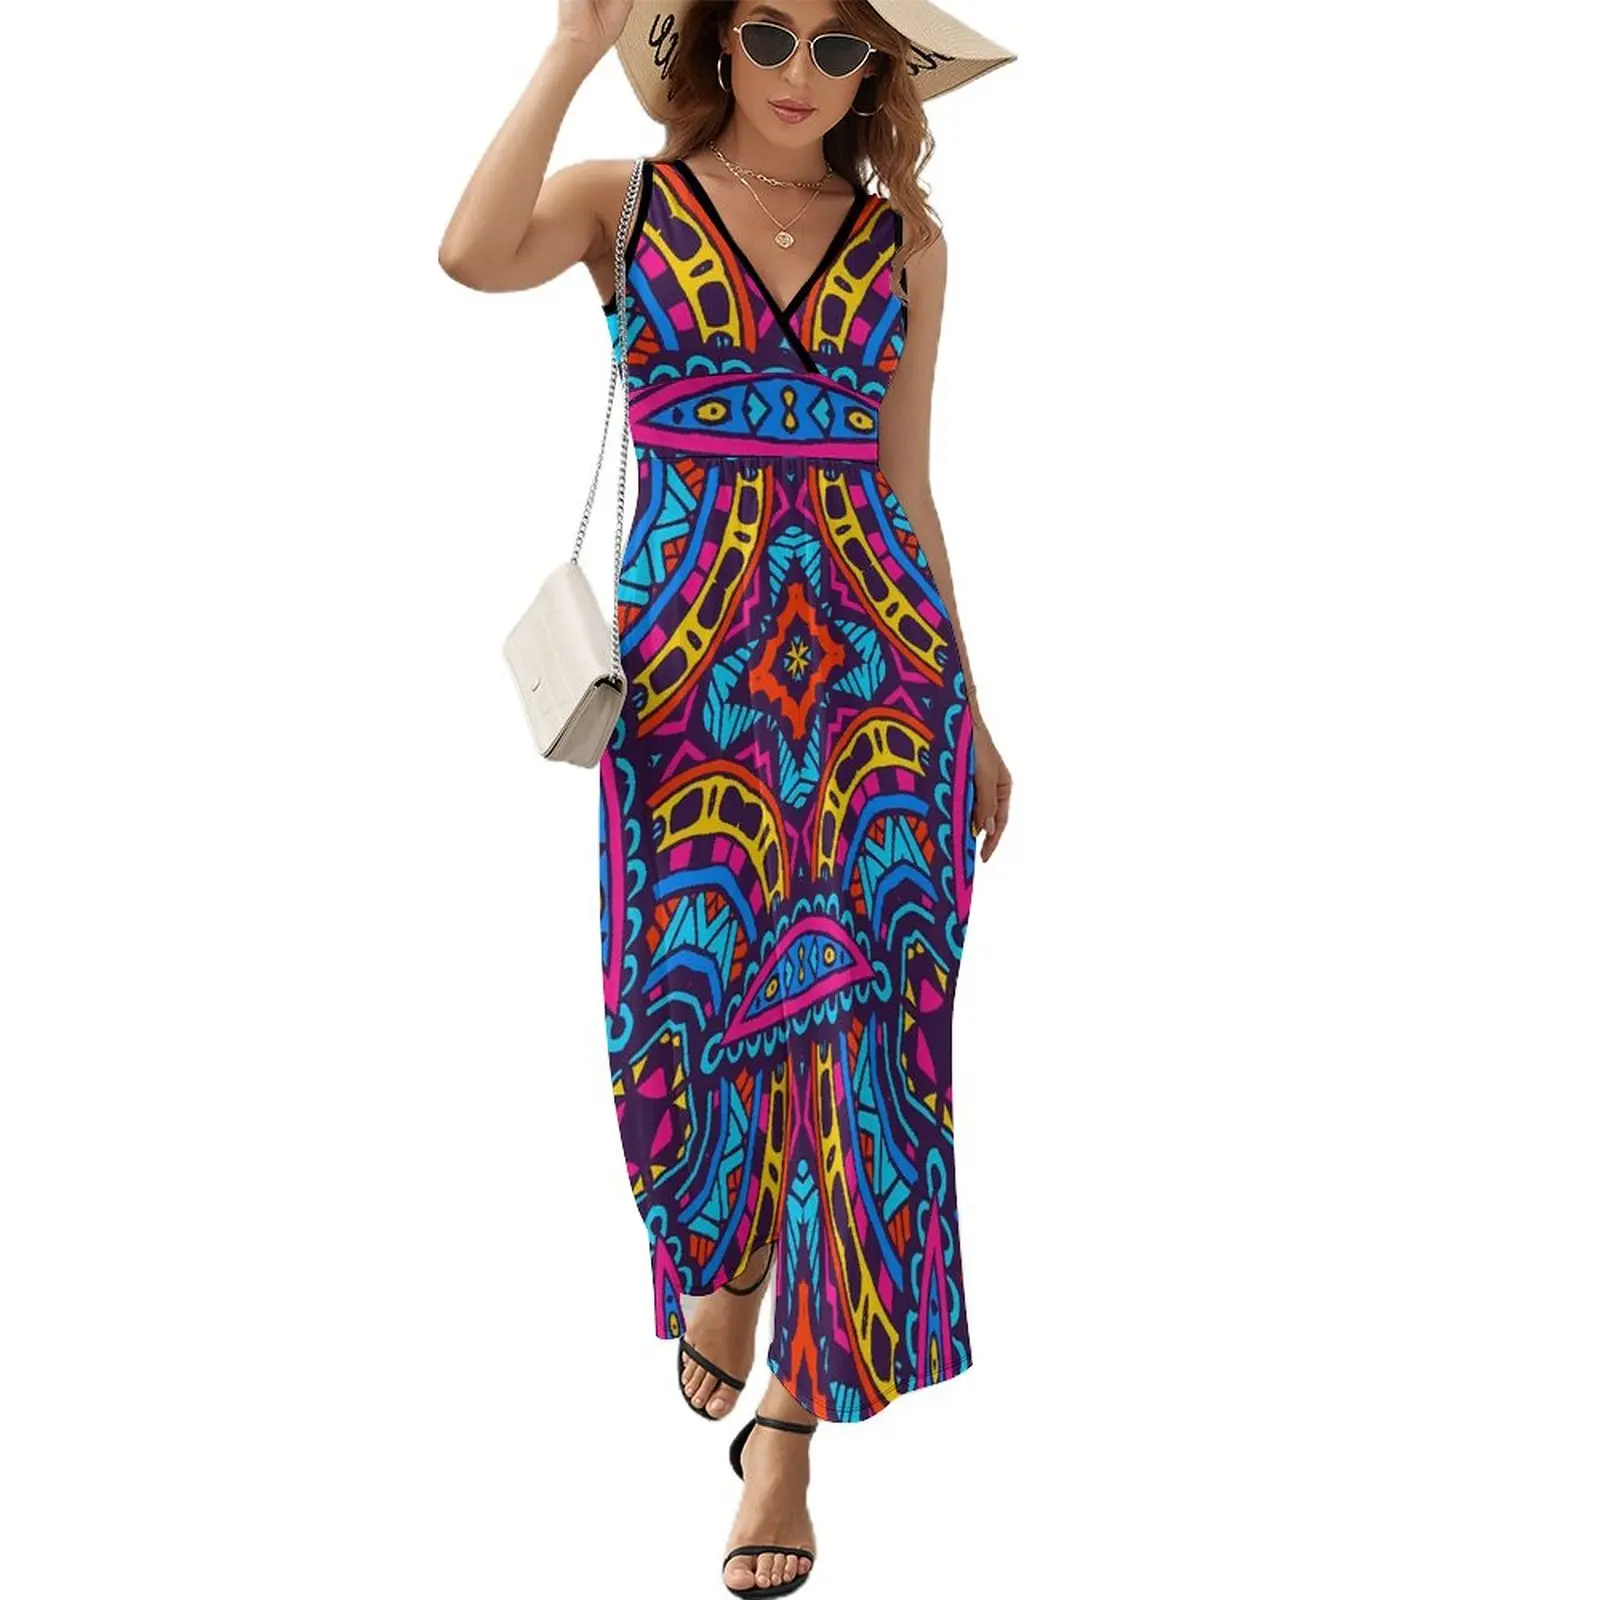 

Платье-Макси женское с принтом, длинное пляжное платье в стиле бохо, с завышенной талией, уличная одежда в ацтекском стиле, лето